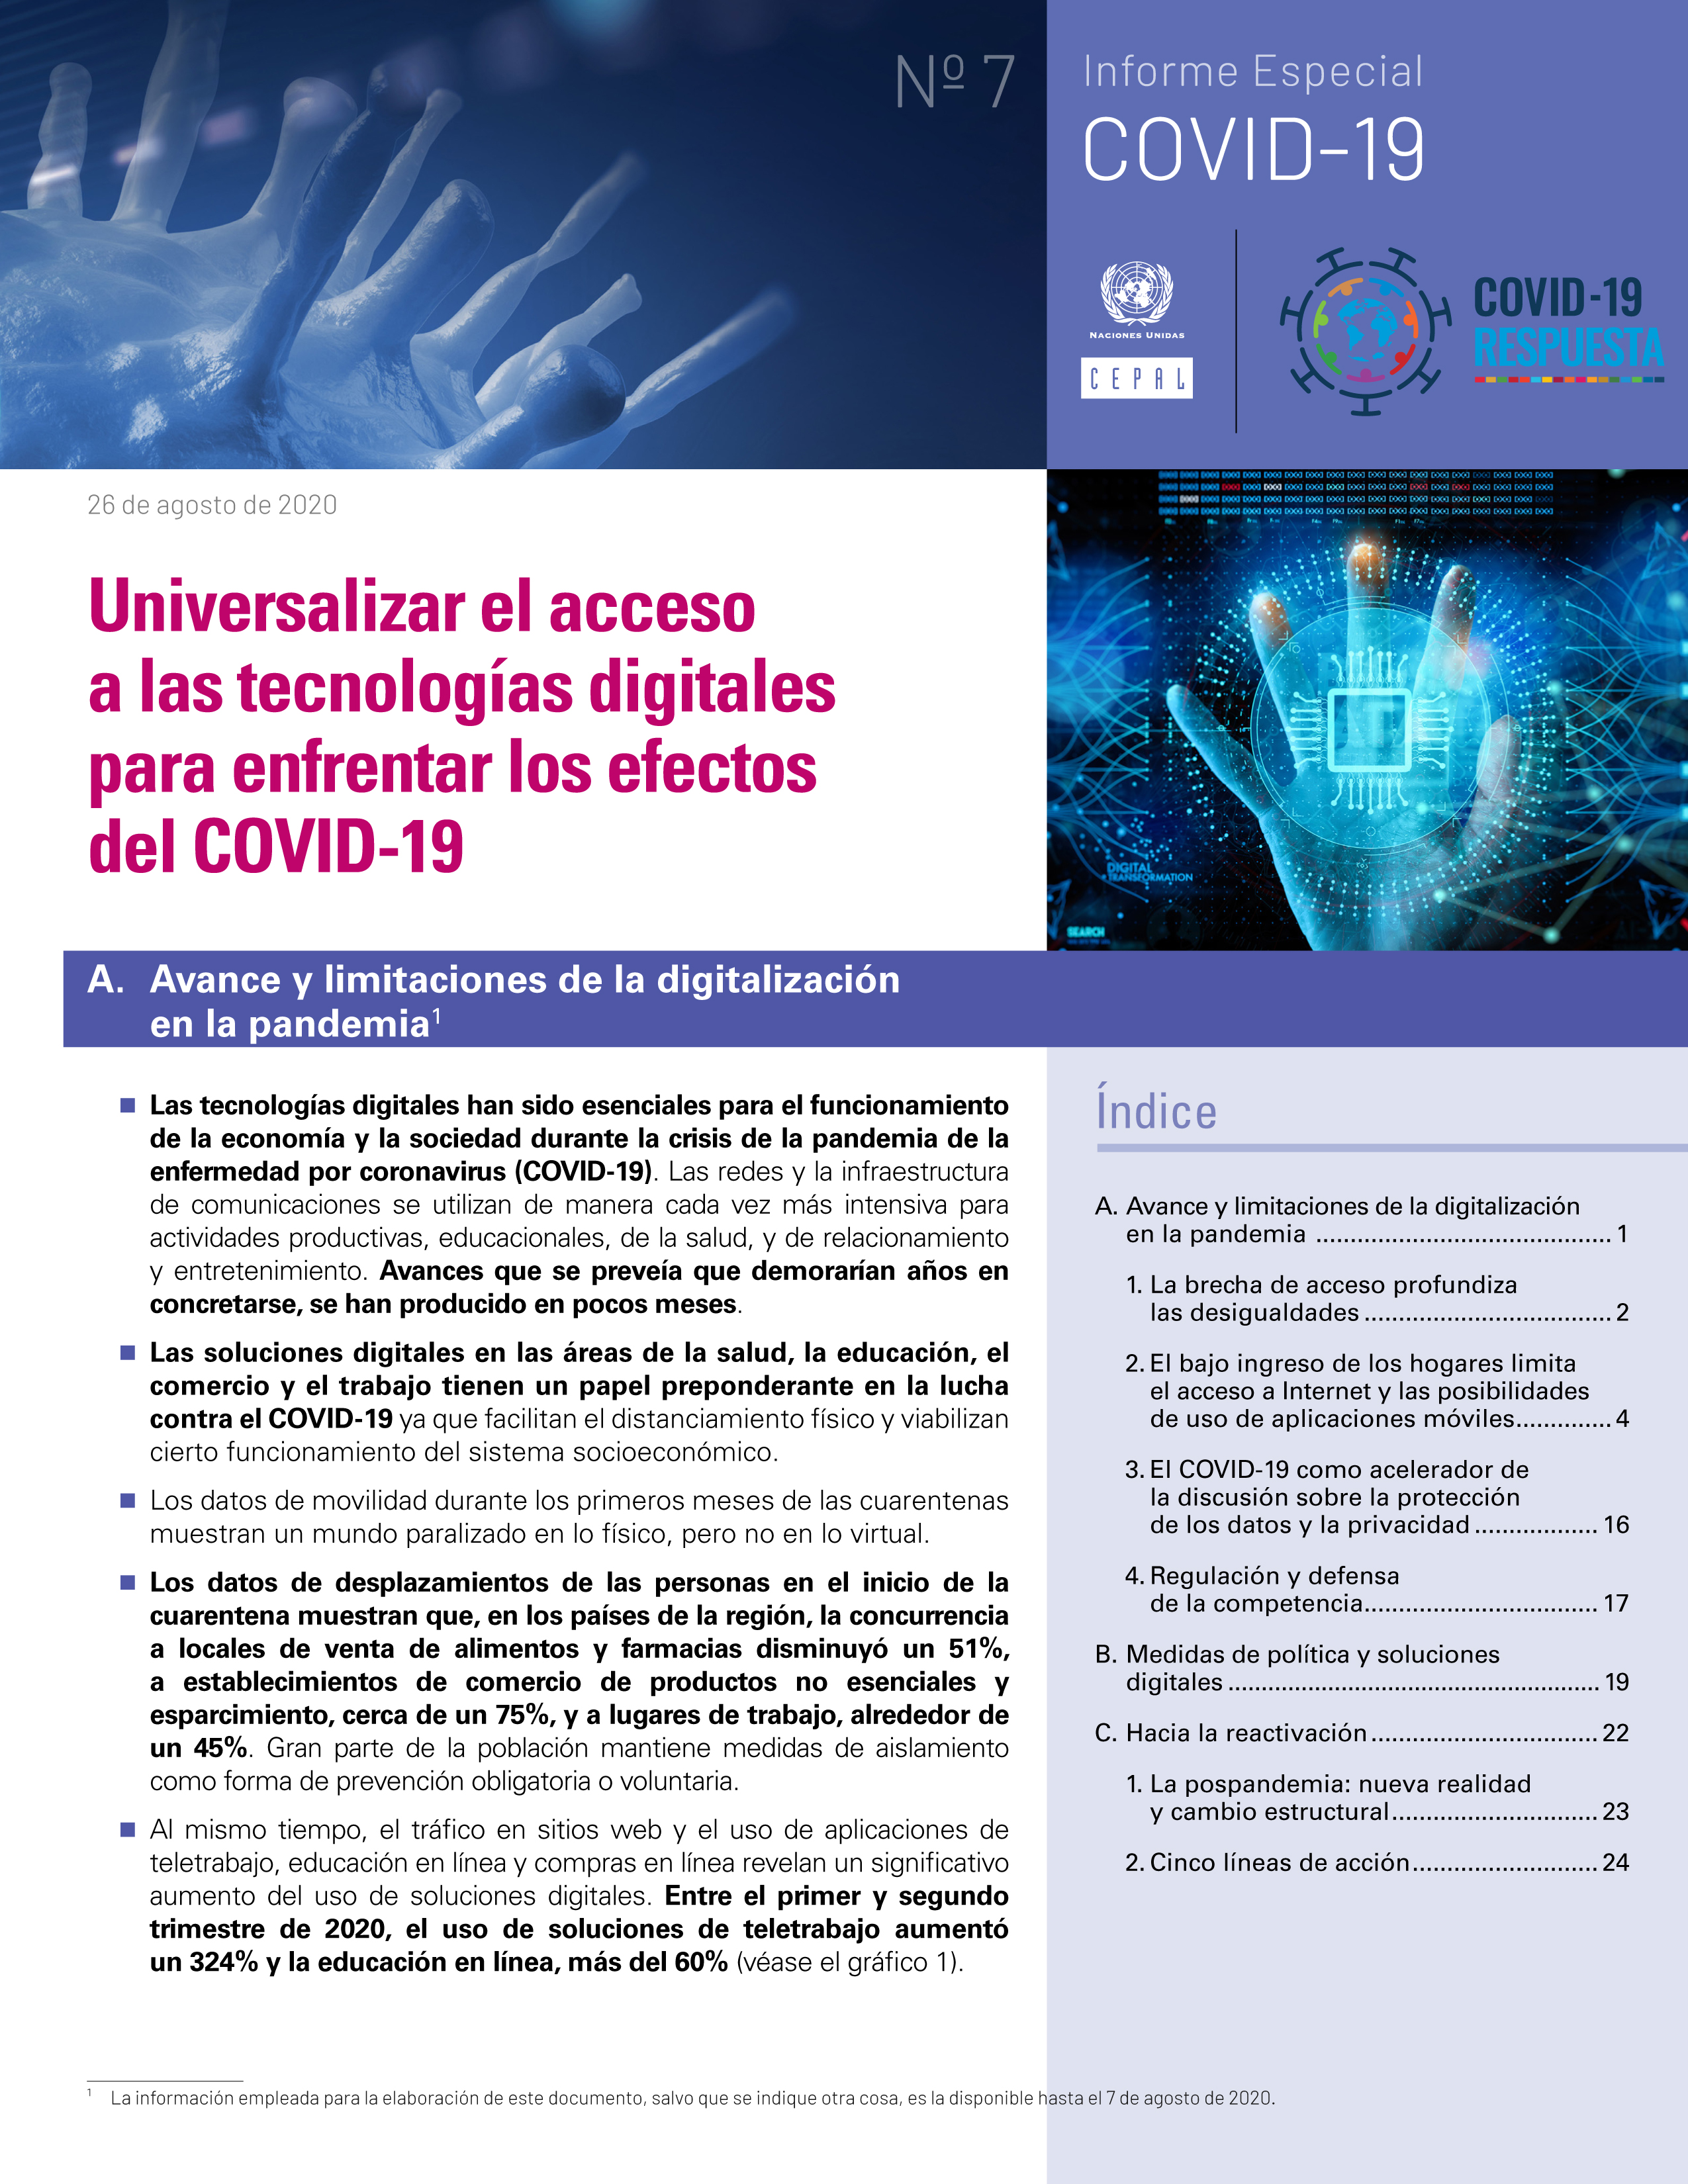 image of Universalizar el acceso a las tecnologías digitales para enfrentar los efectos del COVID-19